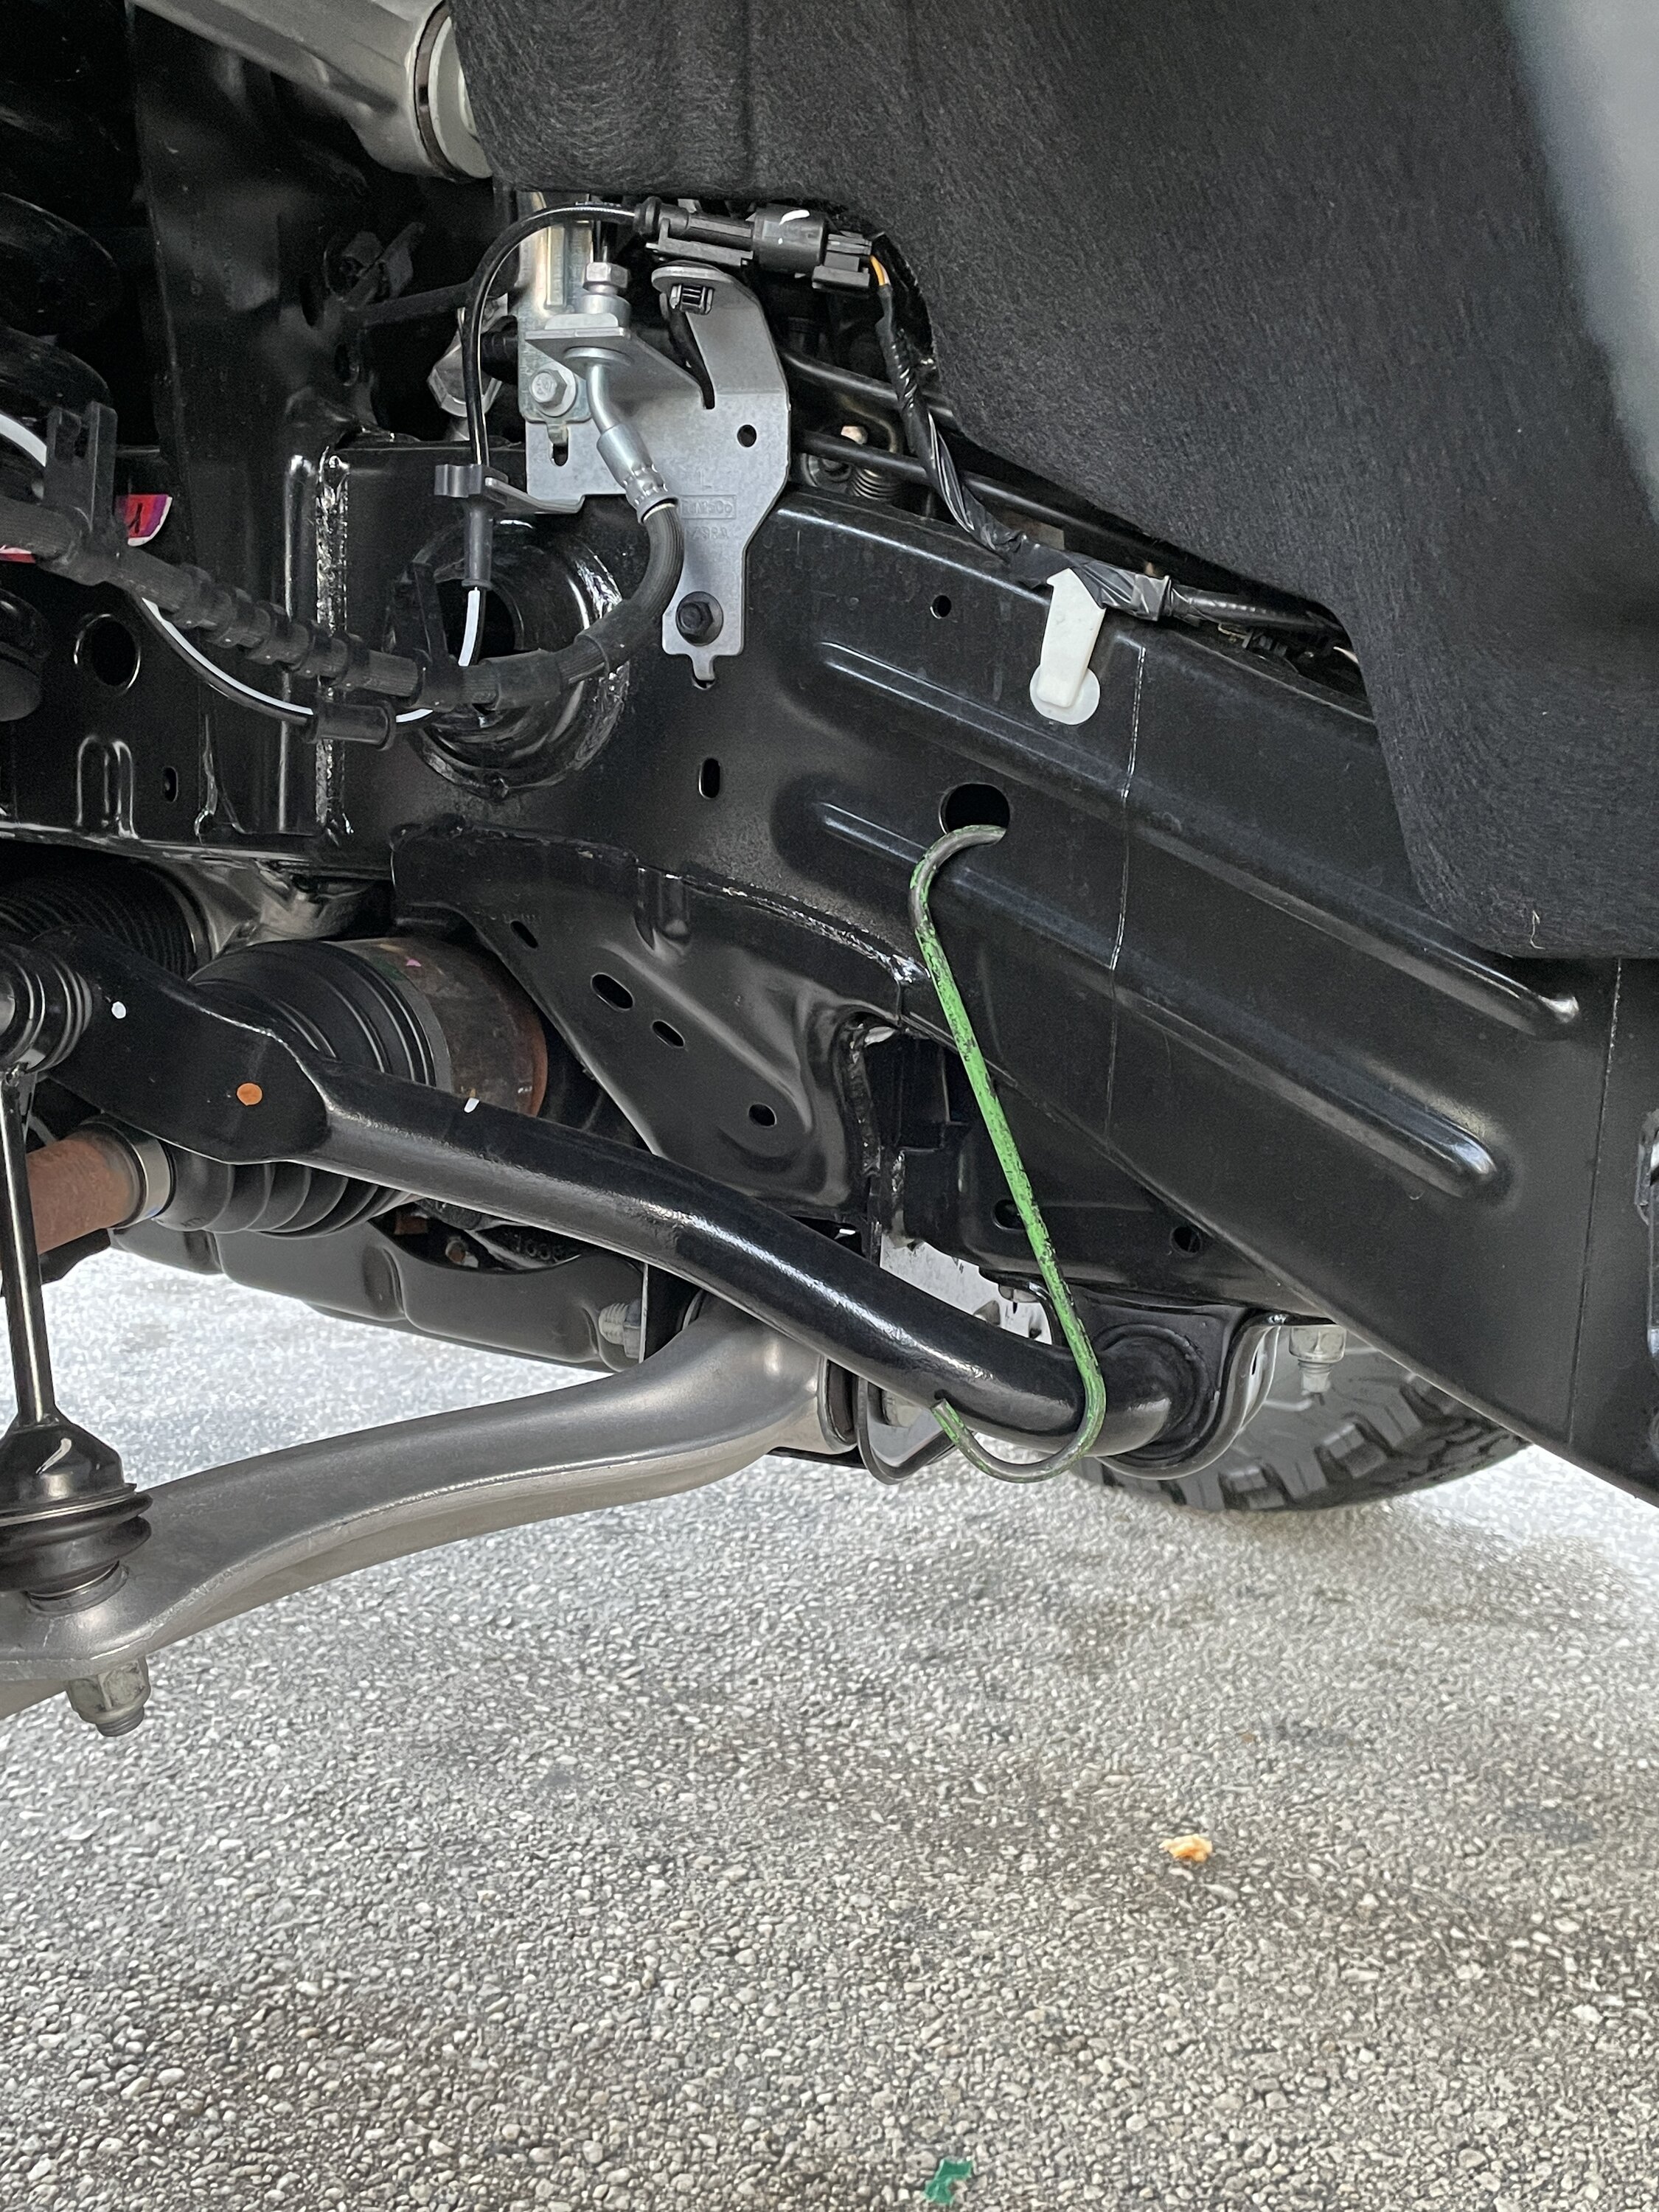 Ford Bronco Help Please: Caliper Bolt loose / damaged caliper base? IMG_0374.JPEG